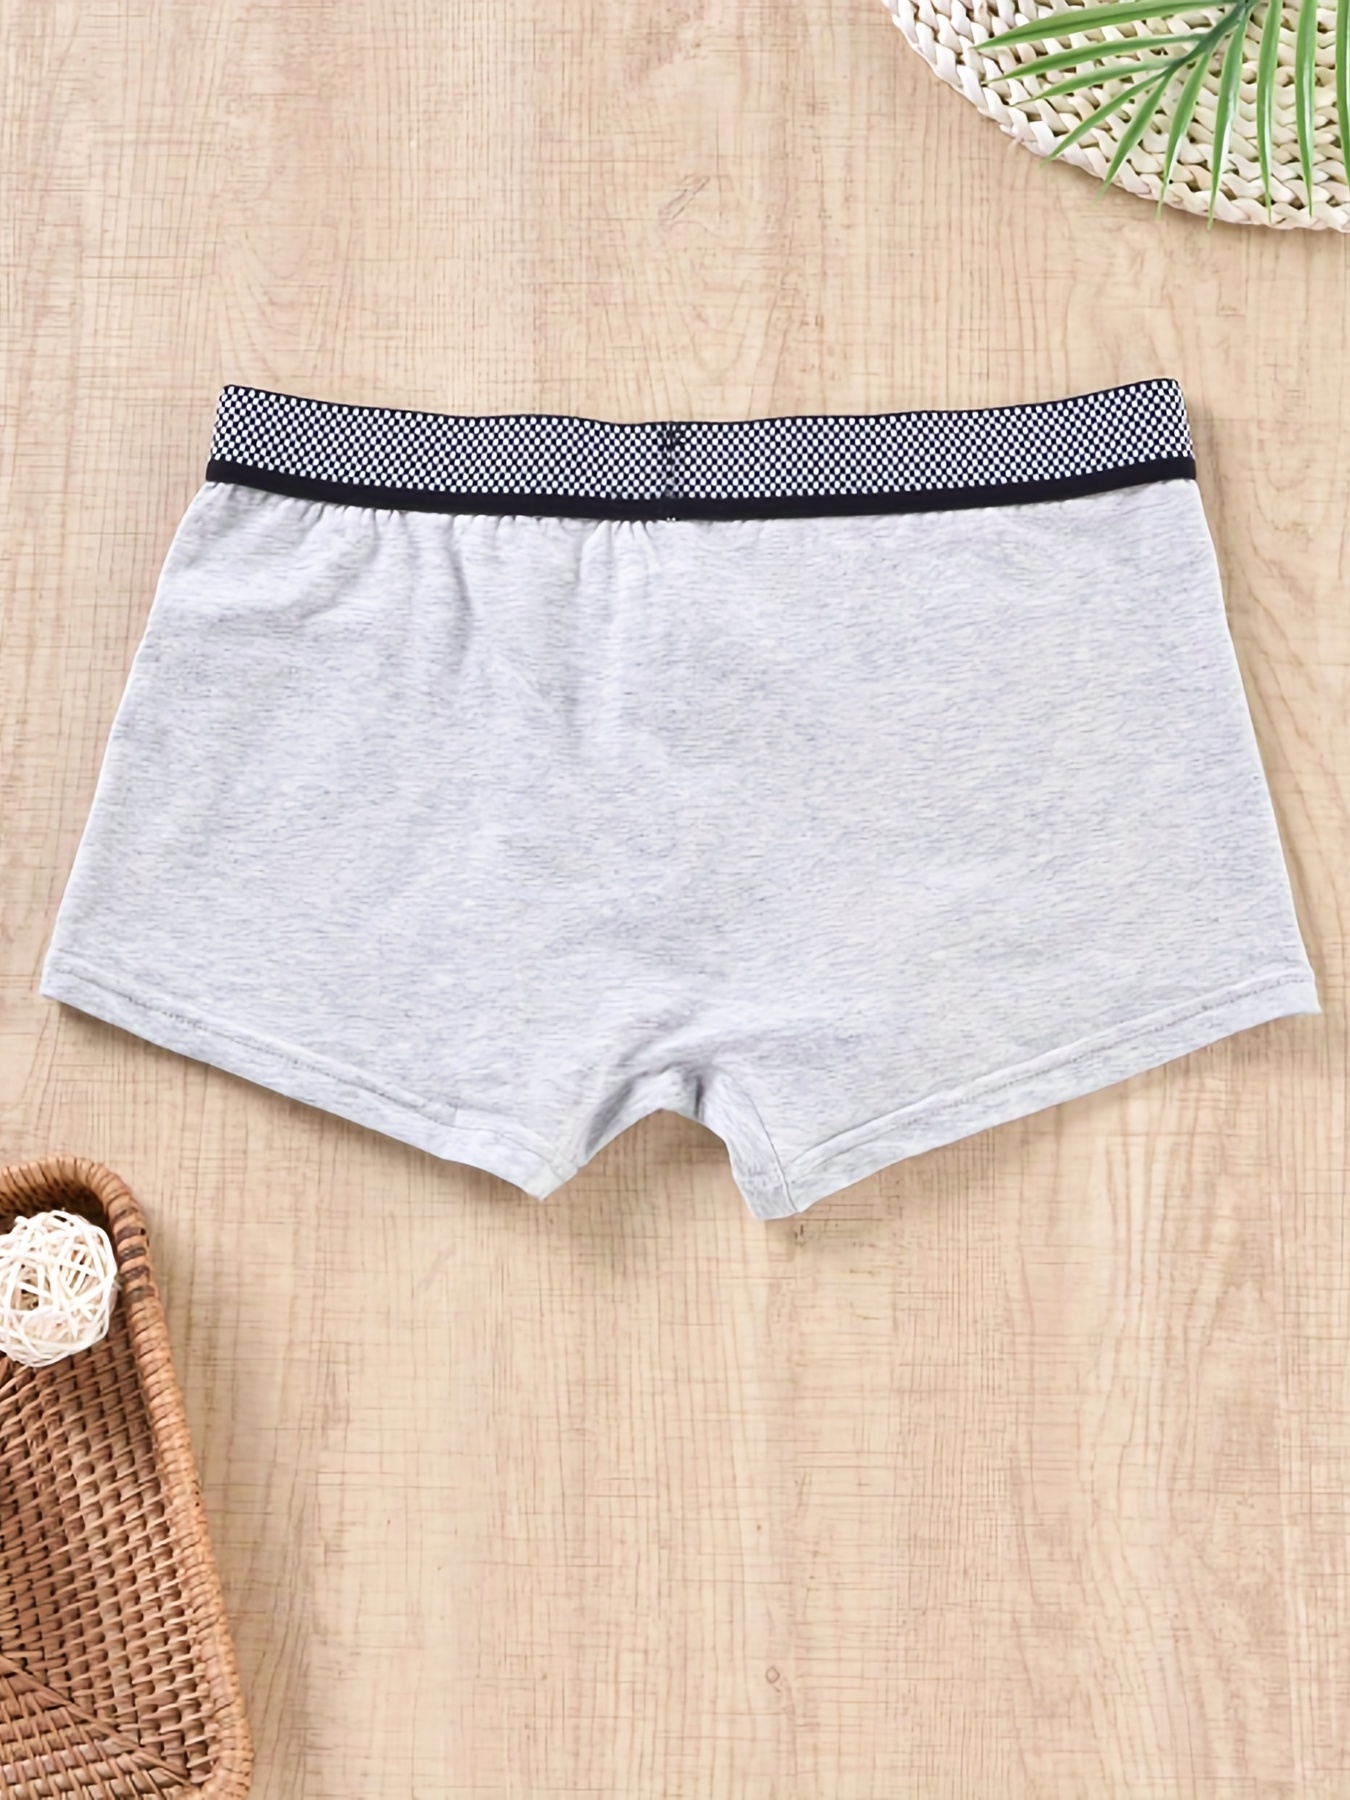 Fashion Men Underwear Briefs Comfortable Cotton Loose Panties Plus Size